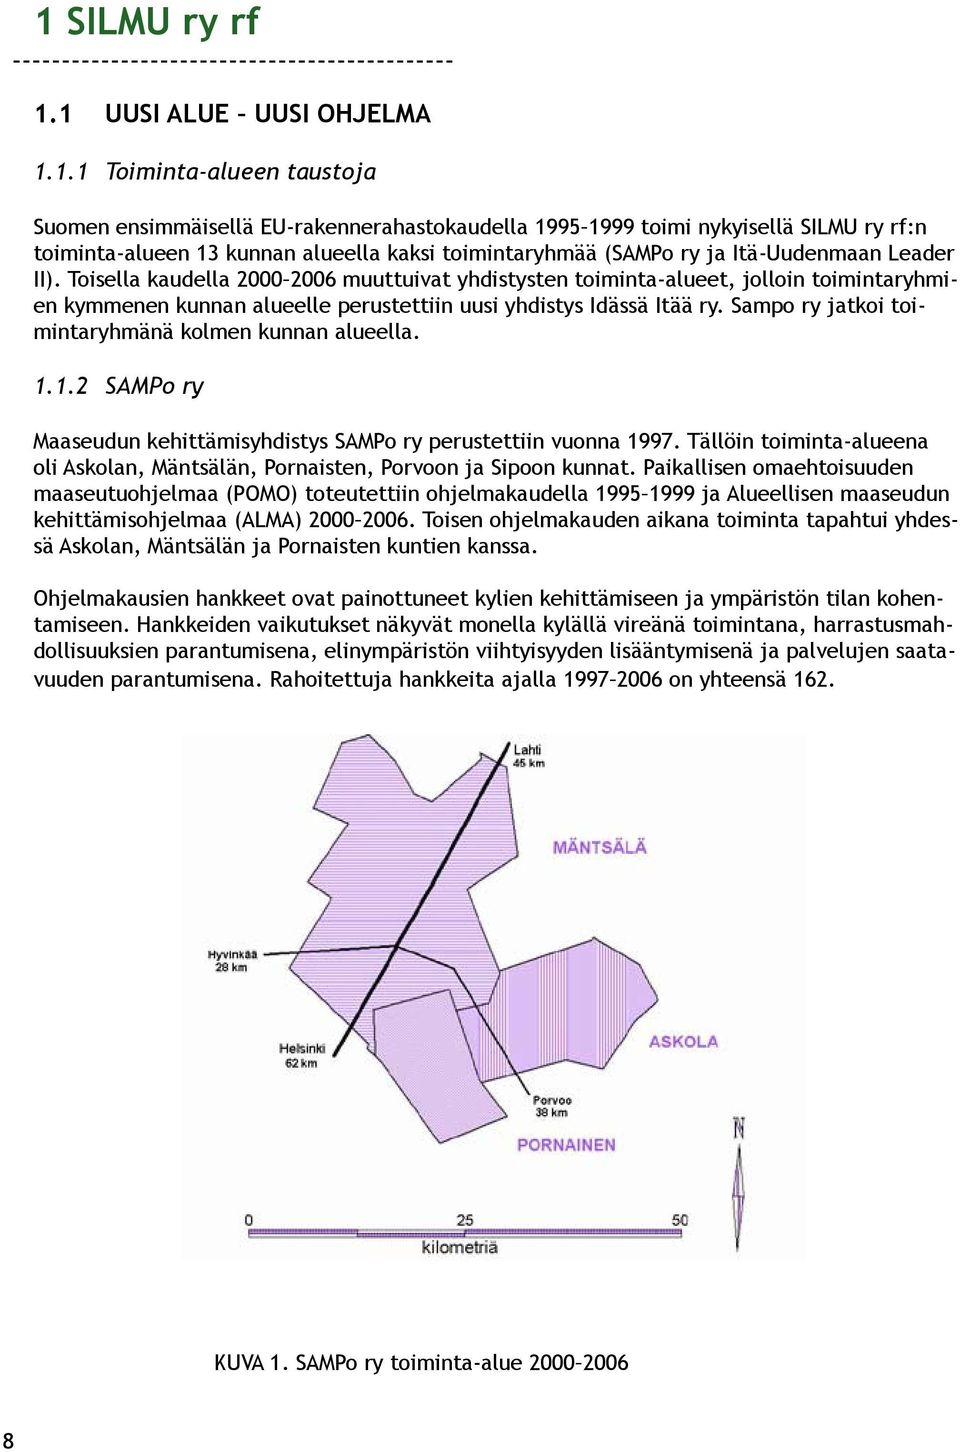 Toisella kaudella 2000 2006 muuttuivat yhdistysten toiminta-alueet, jolloin toimintaryhmien kymmenen kunnan alueelle perustettiin uusi yhdistys Idässä Itää ry.